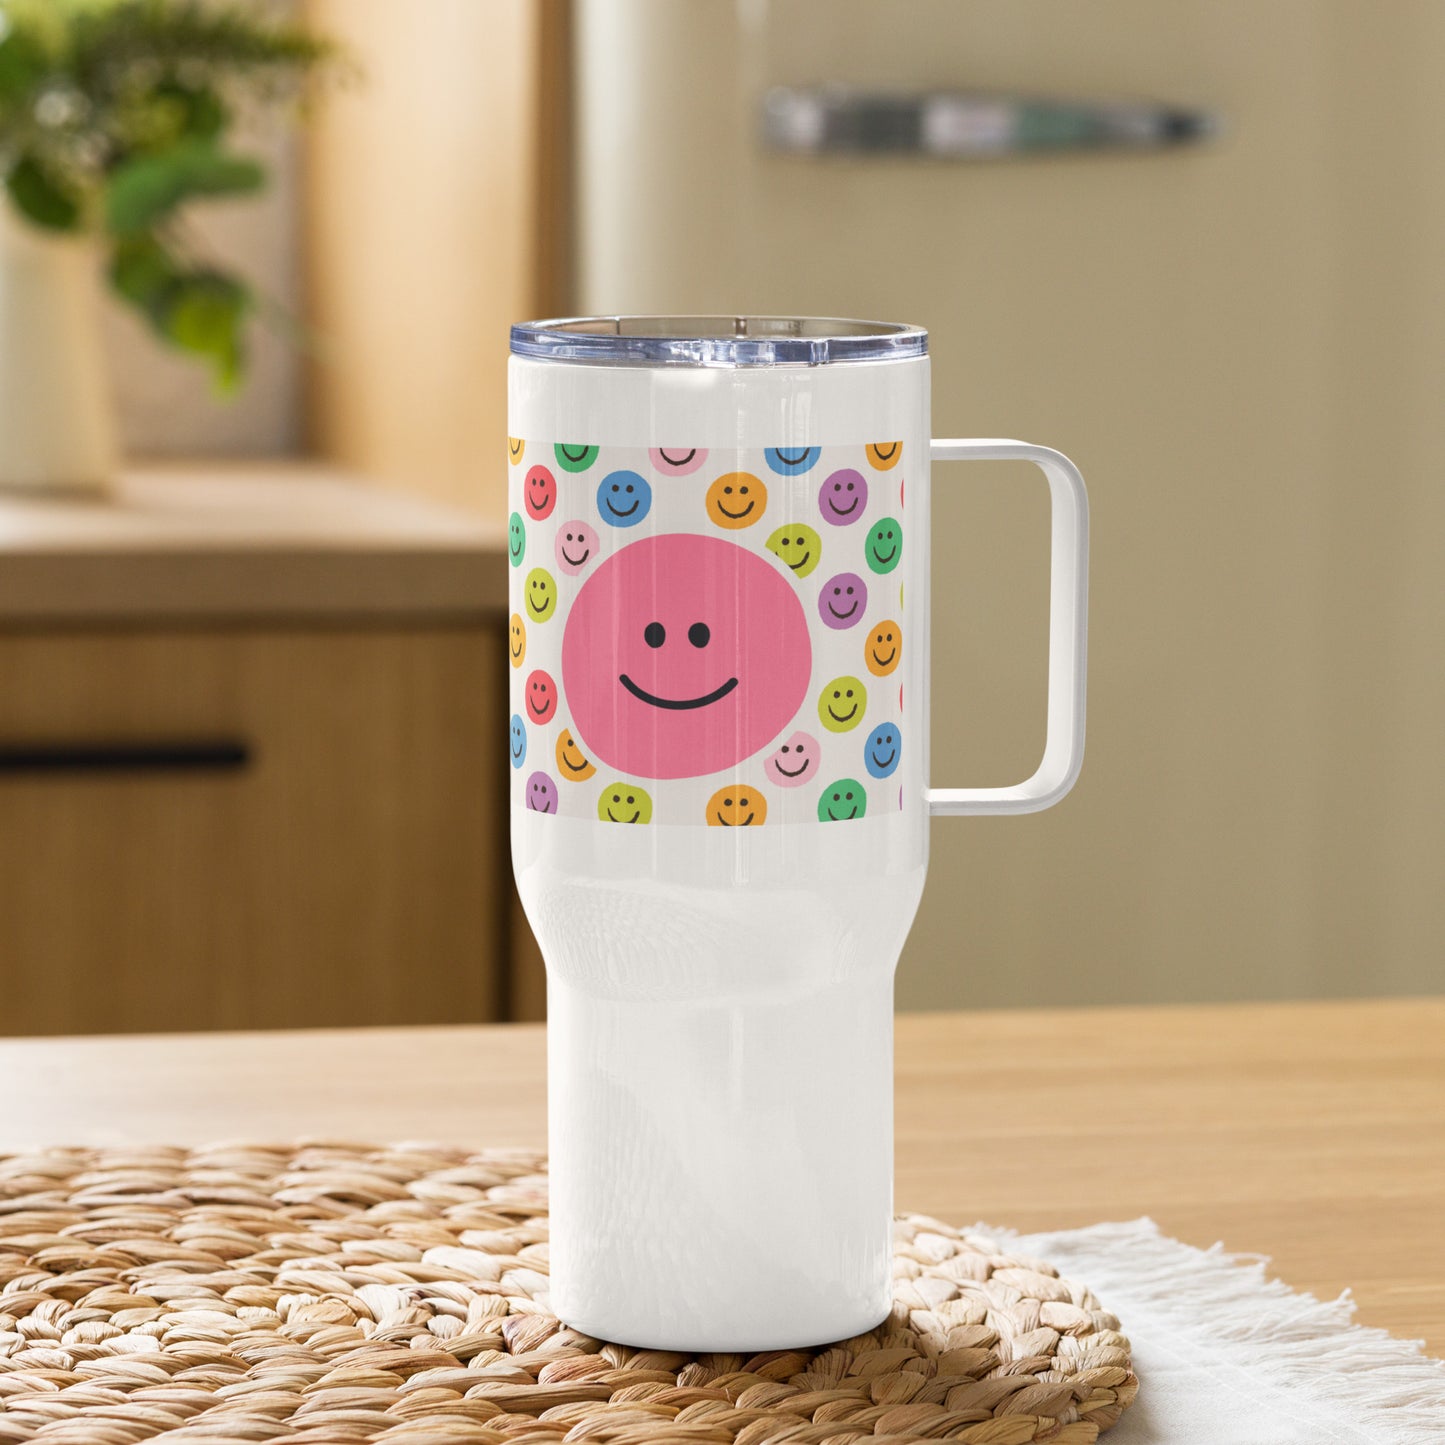 Pink Smiley Travel Mug With A Handle